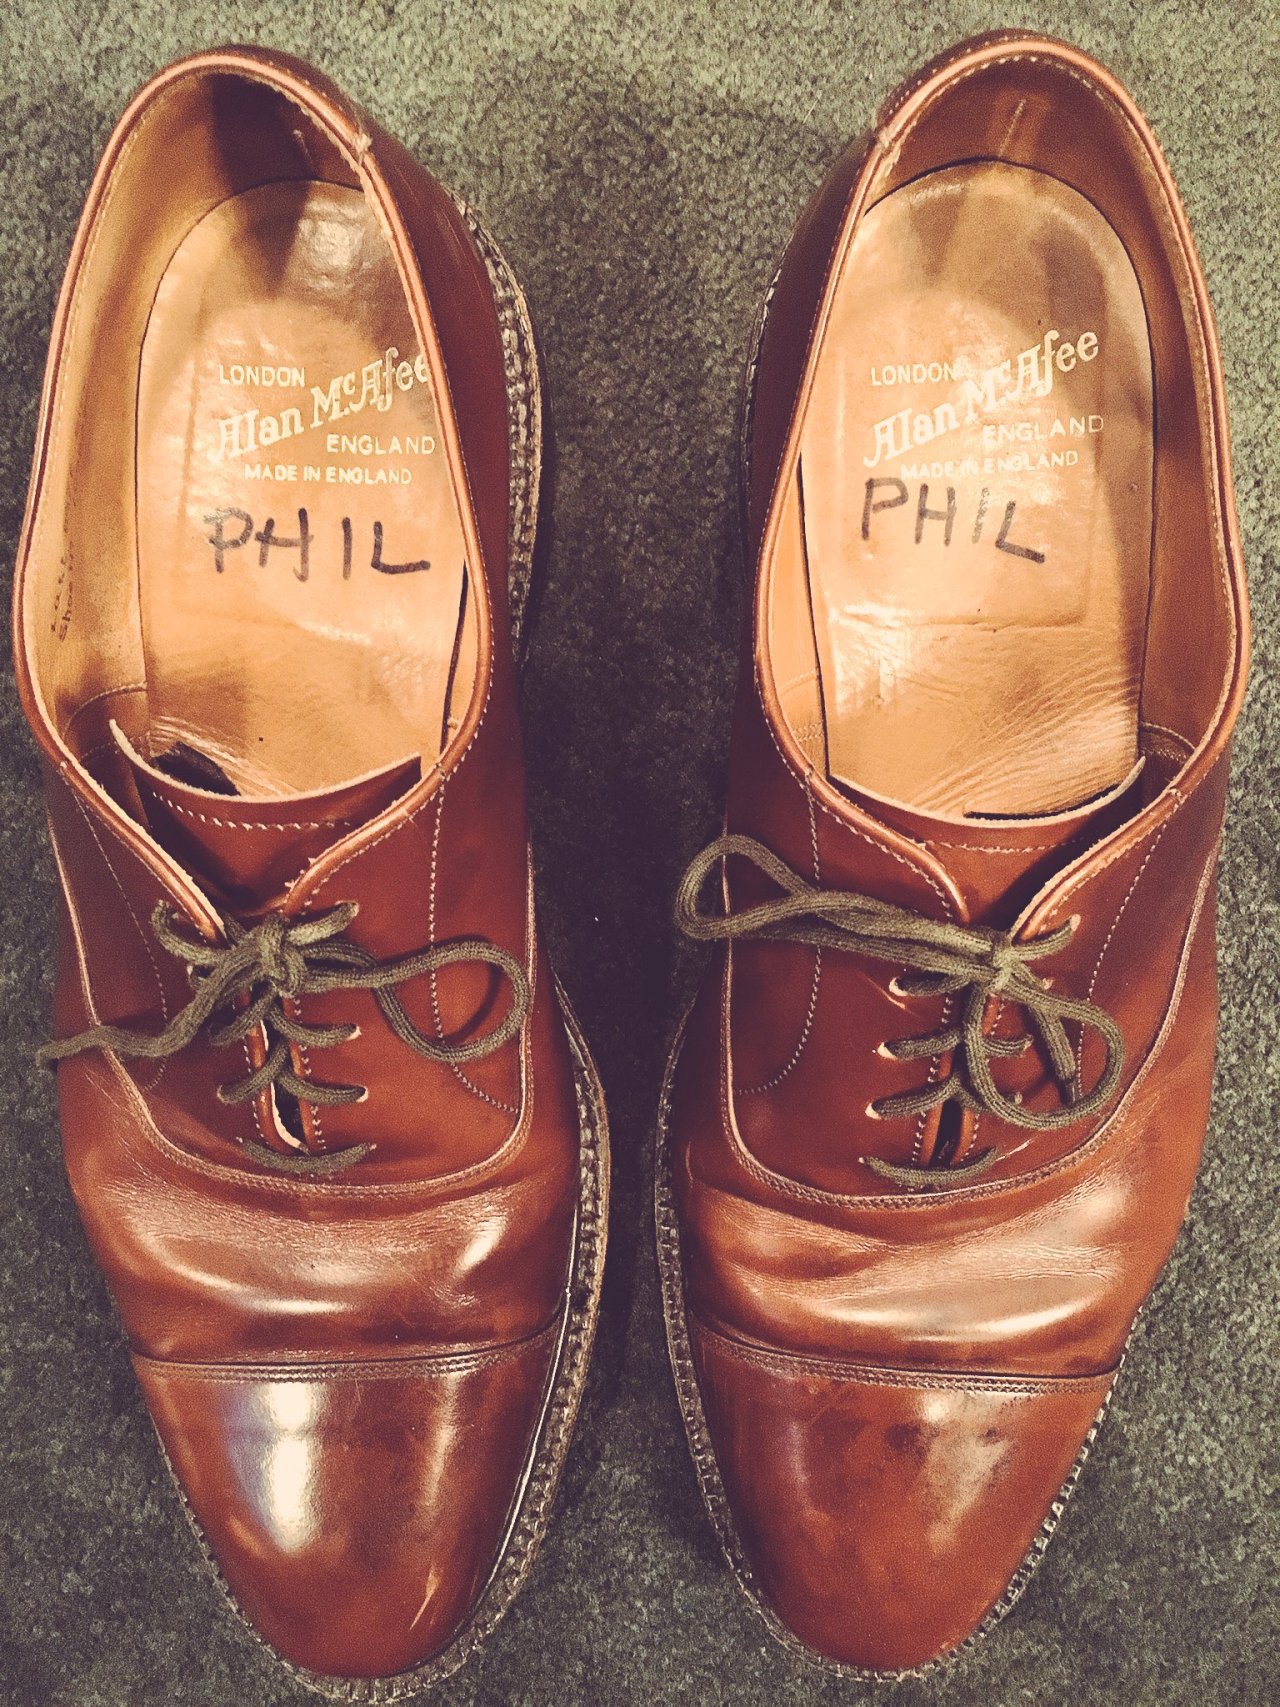 Phil Hartman’s shoes, in SNL’s wardrobe department.